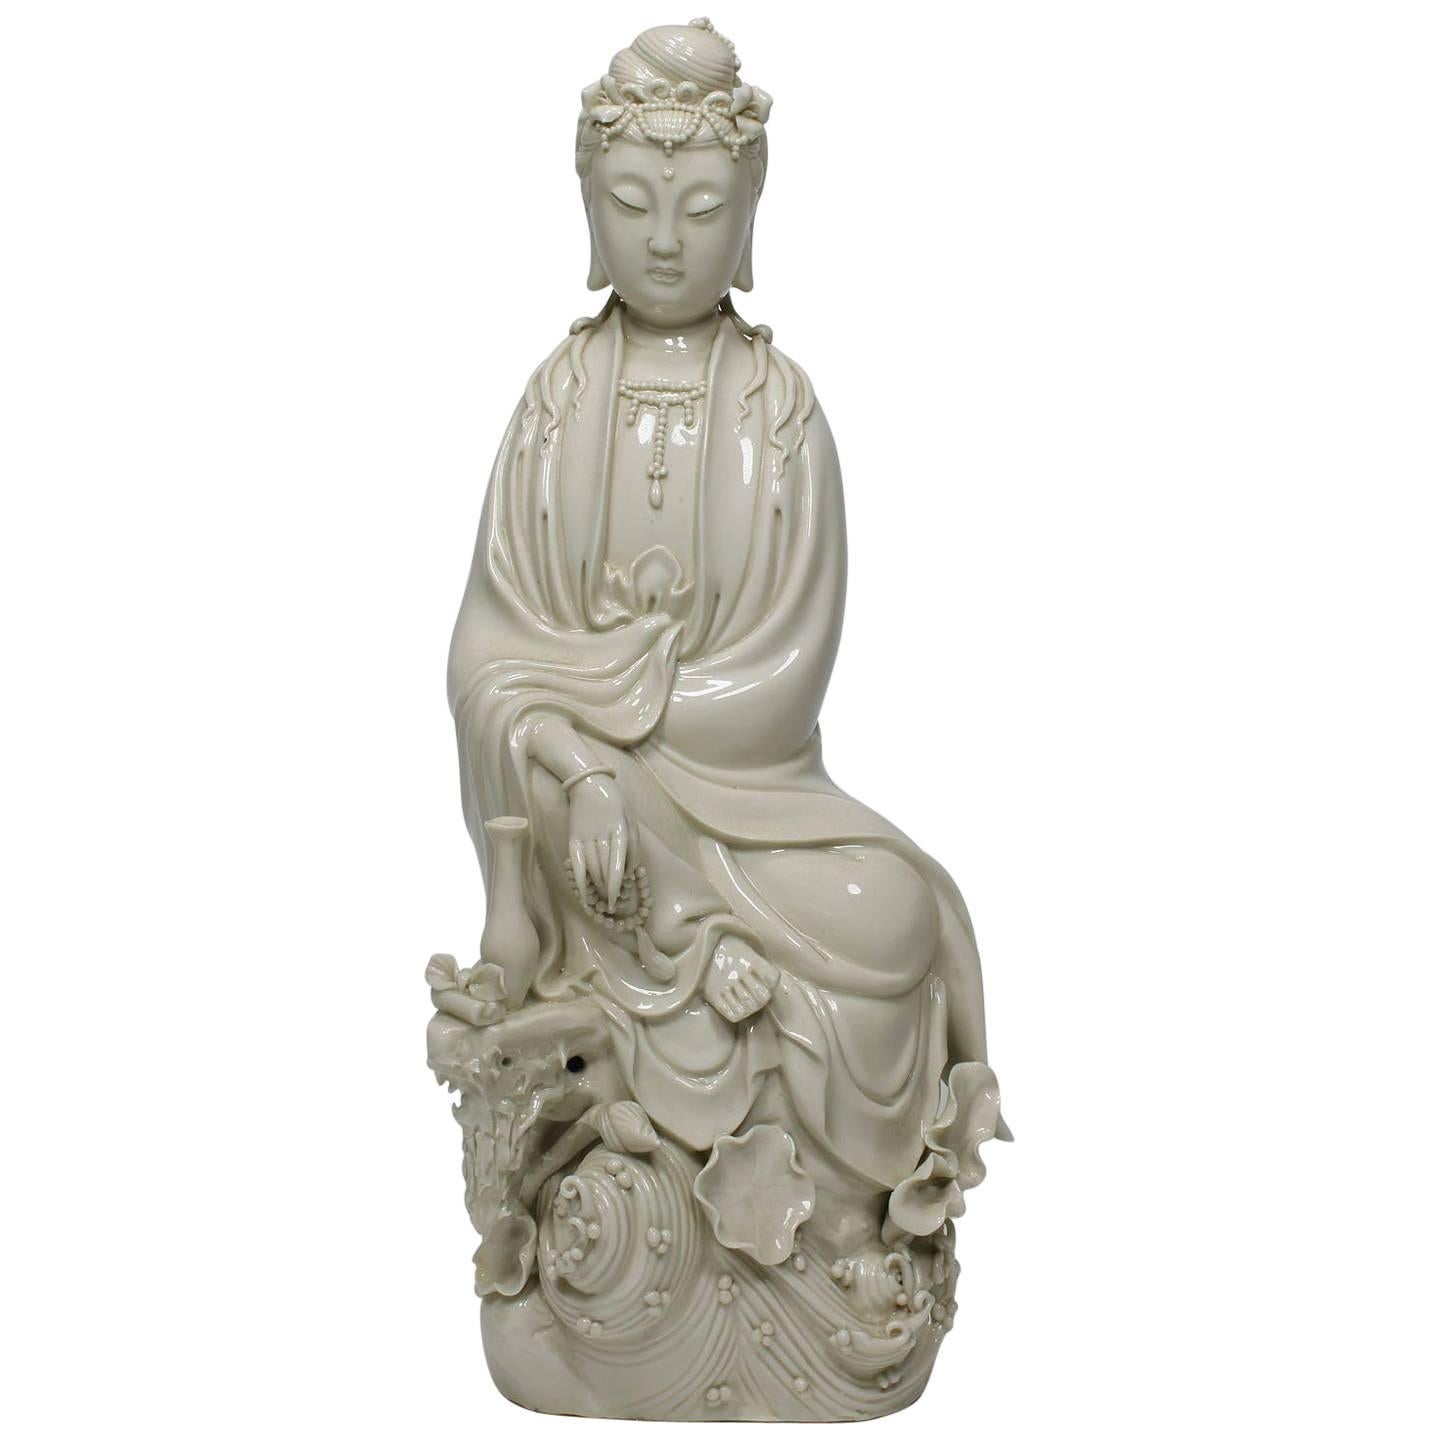 Chinese Blanc de Chine Porcelain Figure of Guanyin ‘Guan Yin’ "Goddess of Mercy"